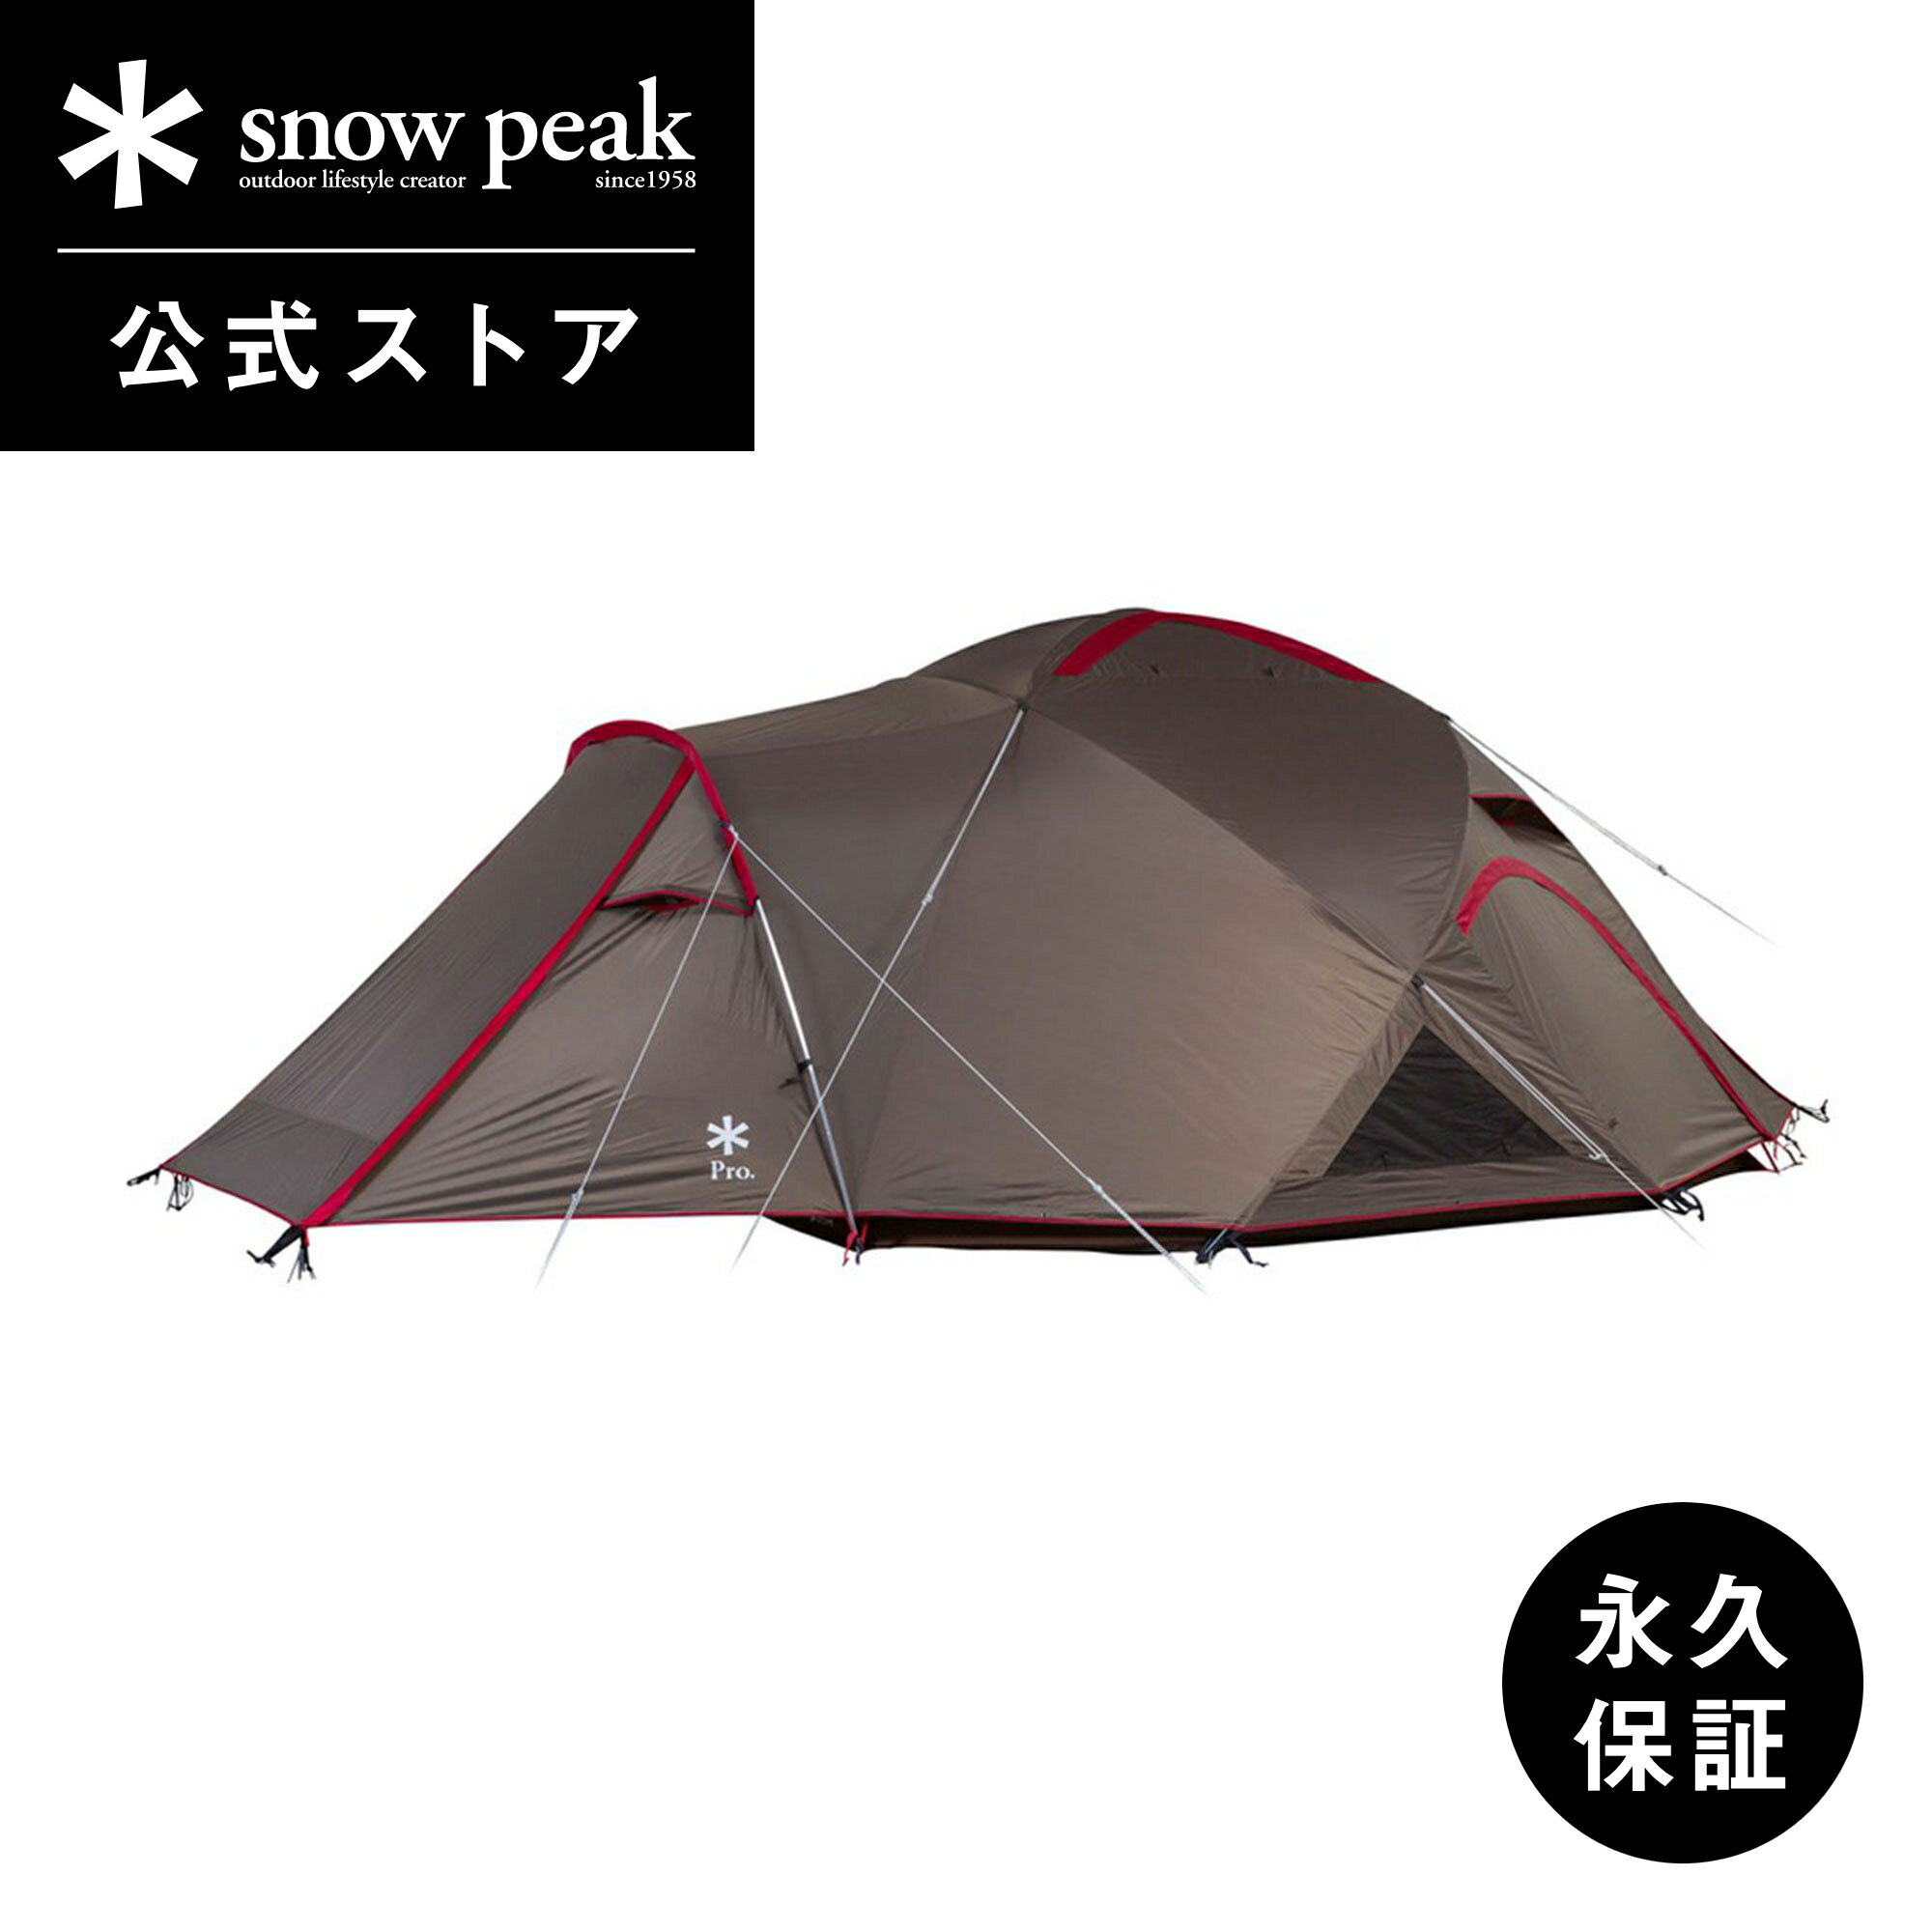 【 スノーピーク 公式 】【永久保証付】snowpeak ランドブリーズPro.4 SD-644 テント キャンプ用品 大型 4人用 6人用 キャンプ アウトドア